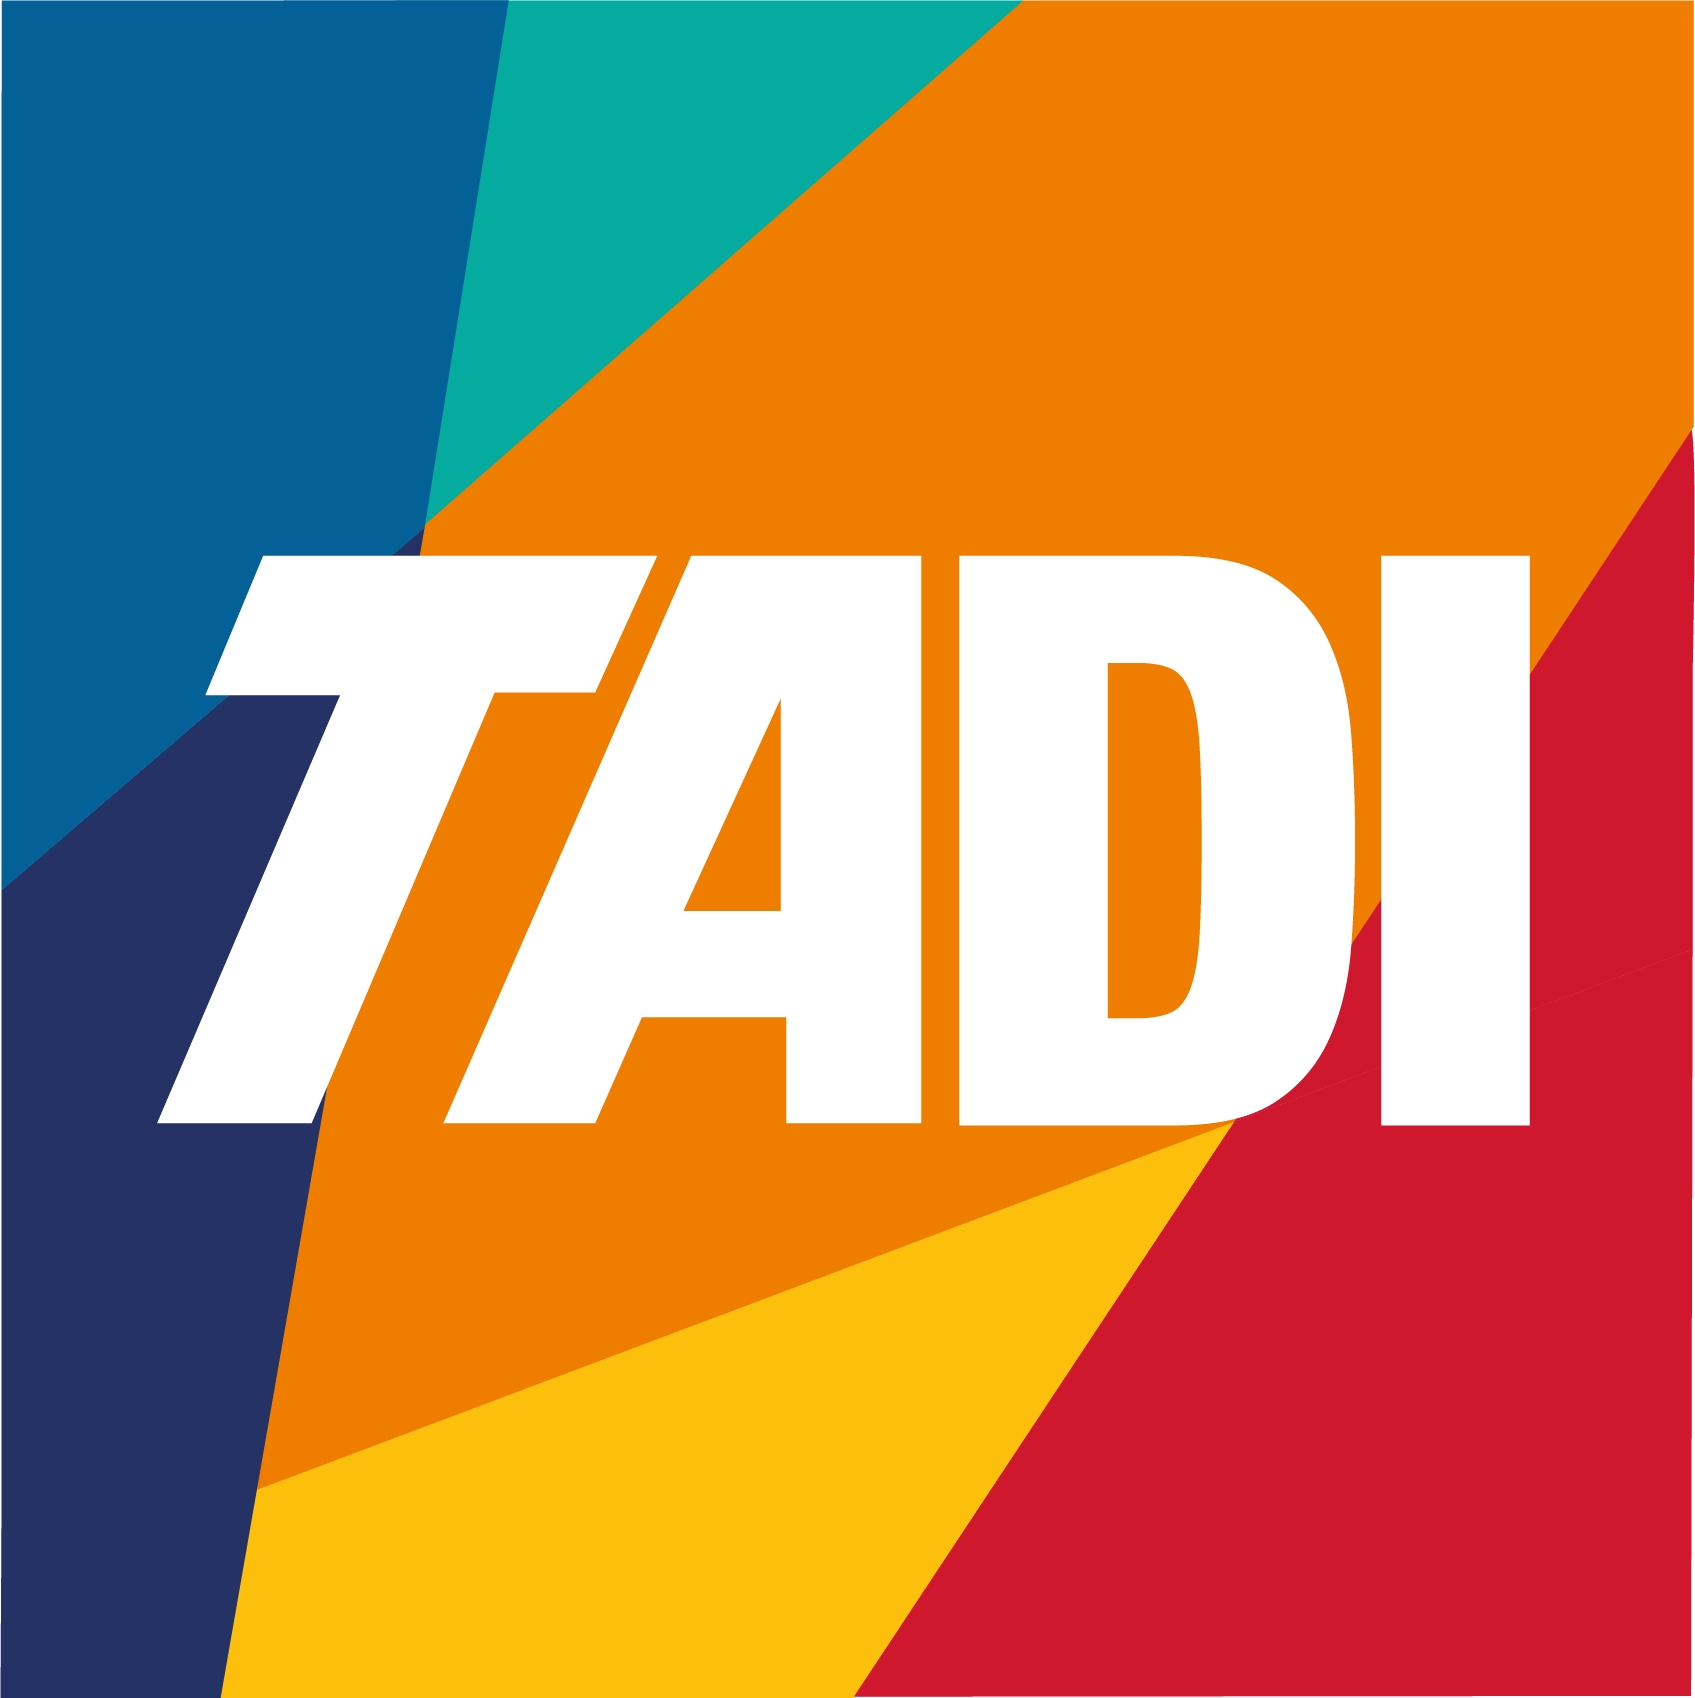 TADI